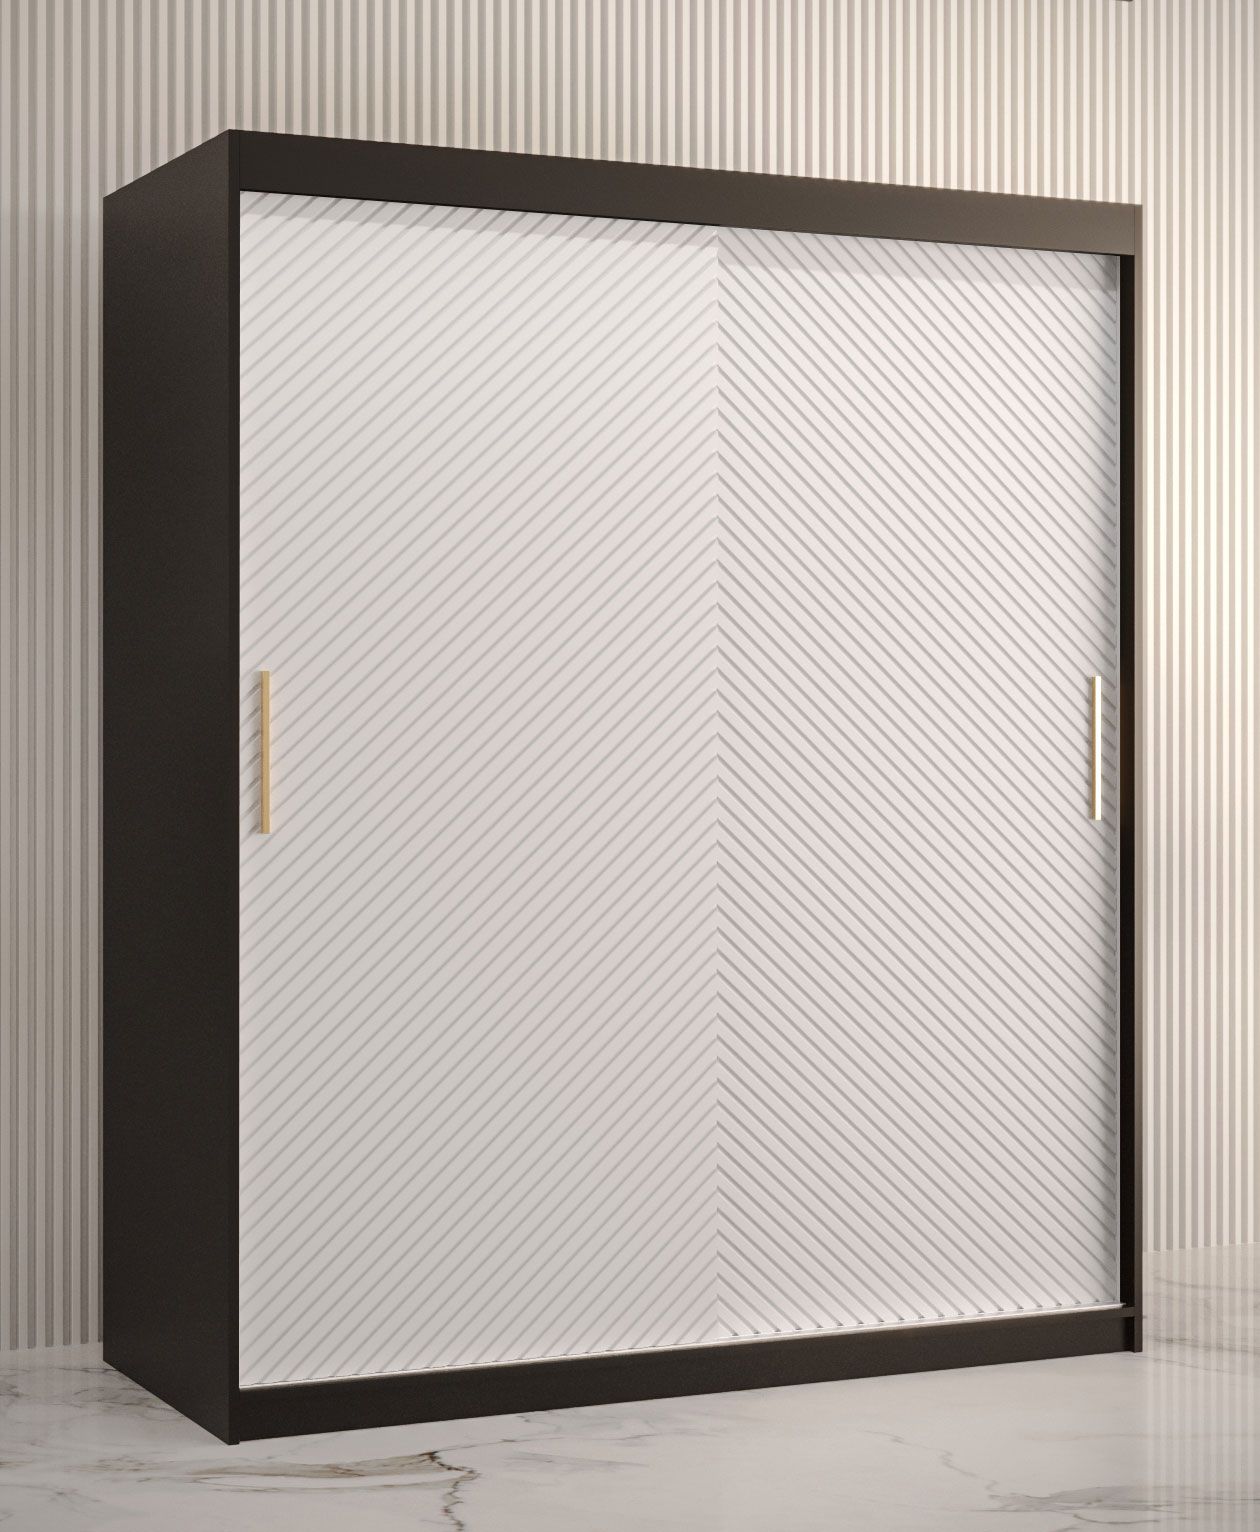 moderne kledingkast met vijf vakken Balmenhorn 11, kleur: mat zwart / mat wit - afmetingen: 200 x 150 x 62 cm (H x B x D), met voldoende opbergruimte.